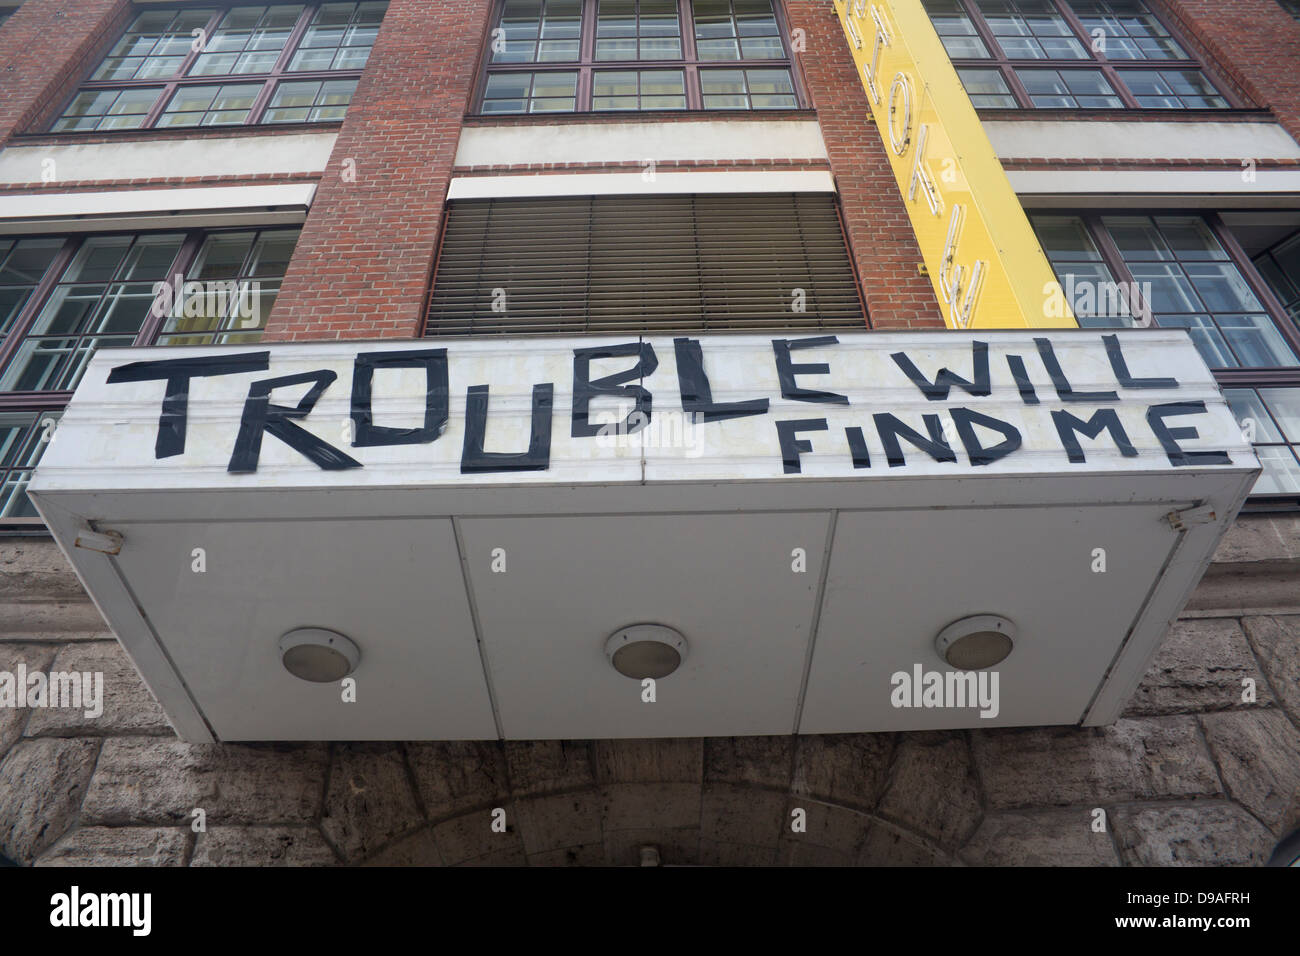 "Probleme werden mich finden" Zeichen mit Klebeband auf der Vorderseite des ehemaligen Hotelgebäude Friedrichshain Berlin Deutschland Stockfoto